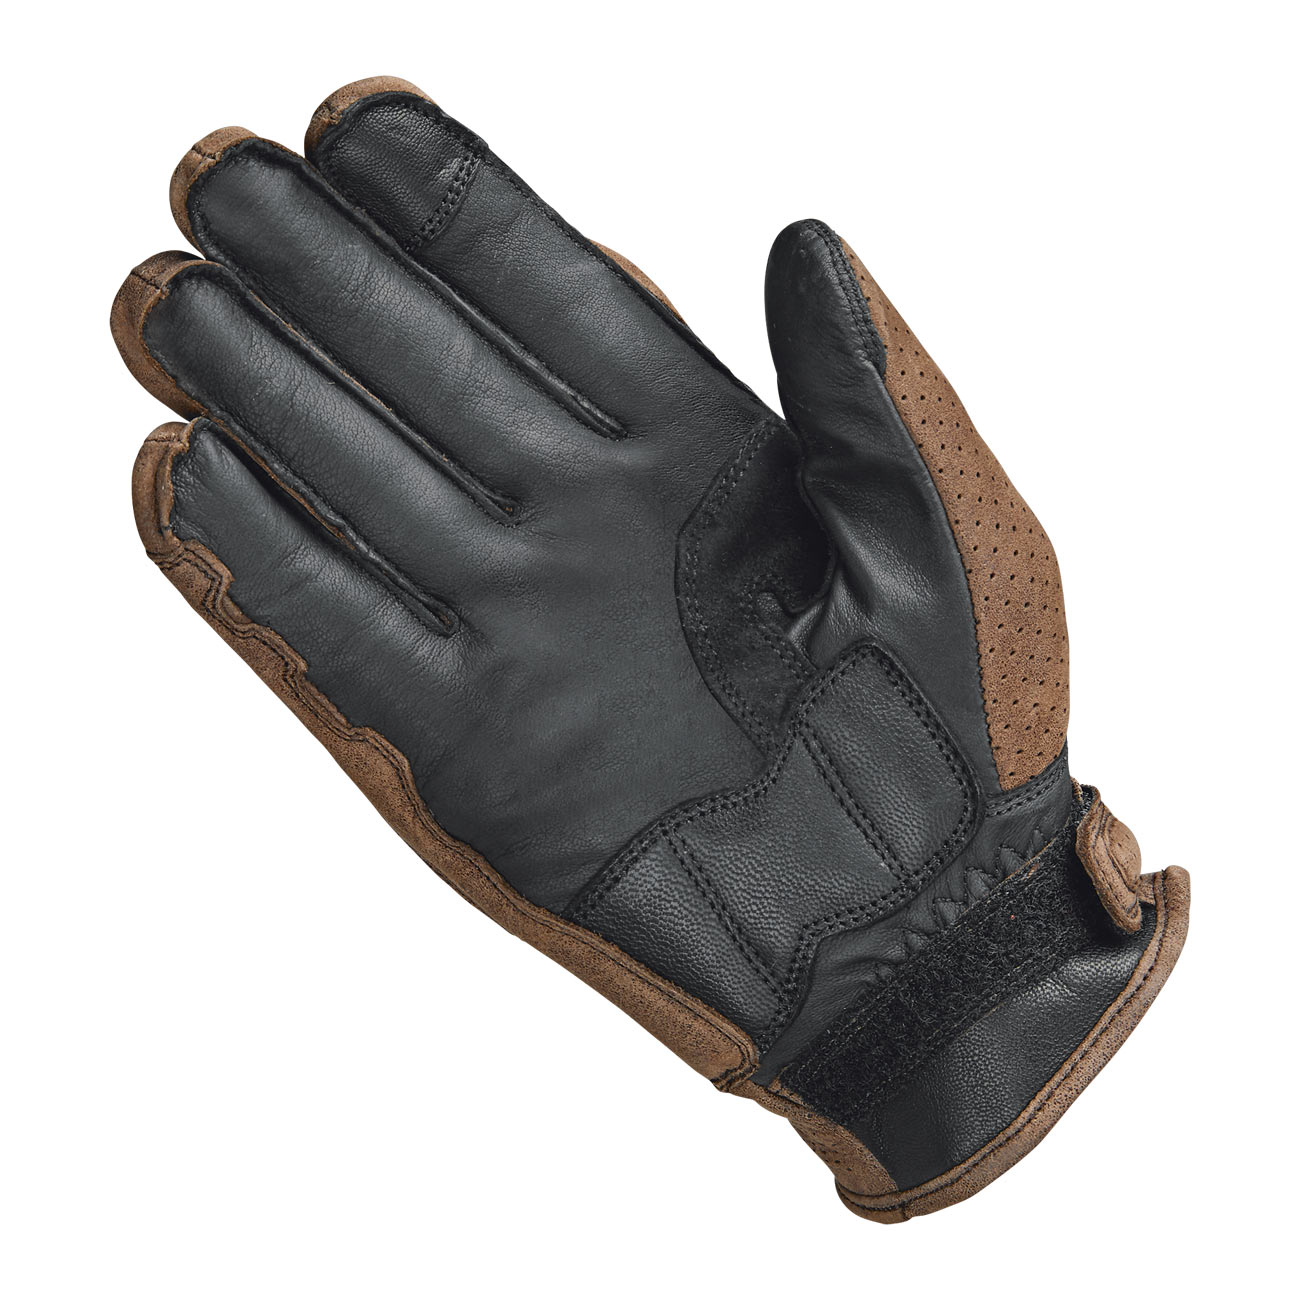 Burt Urban glove